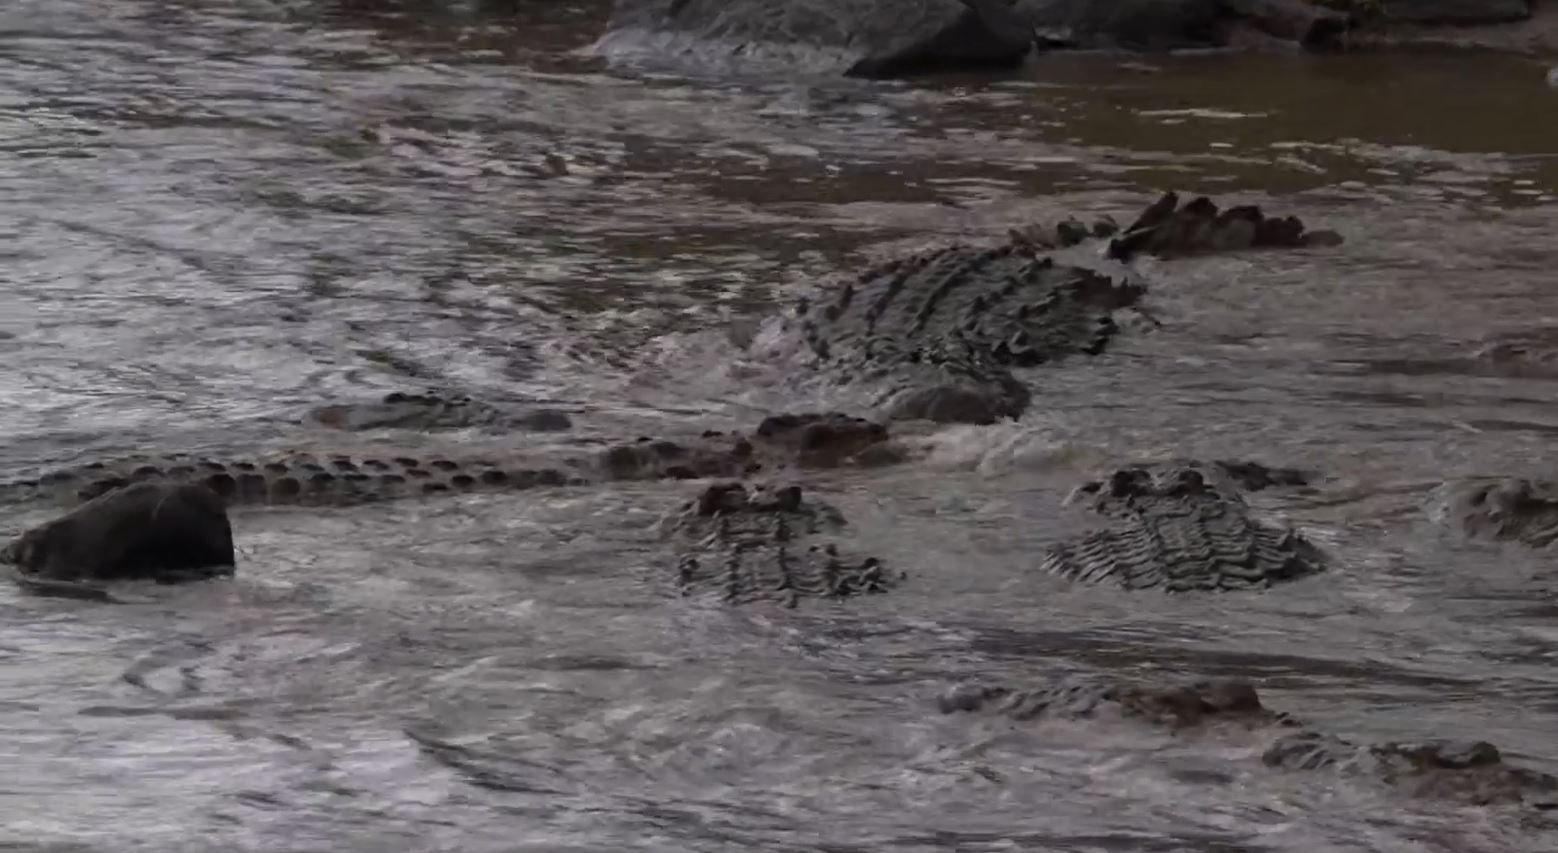 Über 30 Krokodile fressen gerade ein Gnu im Mara-Fluss.Fressen und gefressen werden. Das Gesetz der Natur.